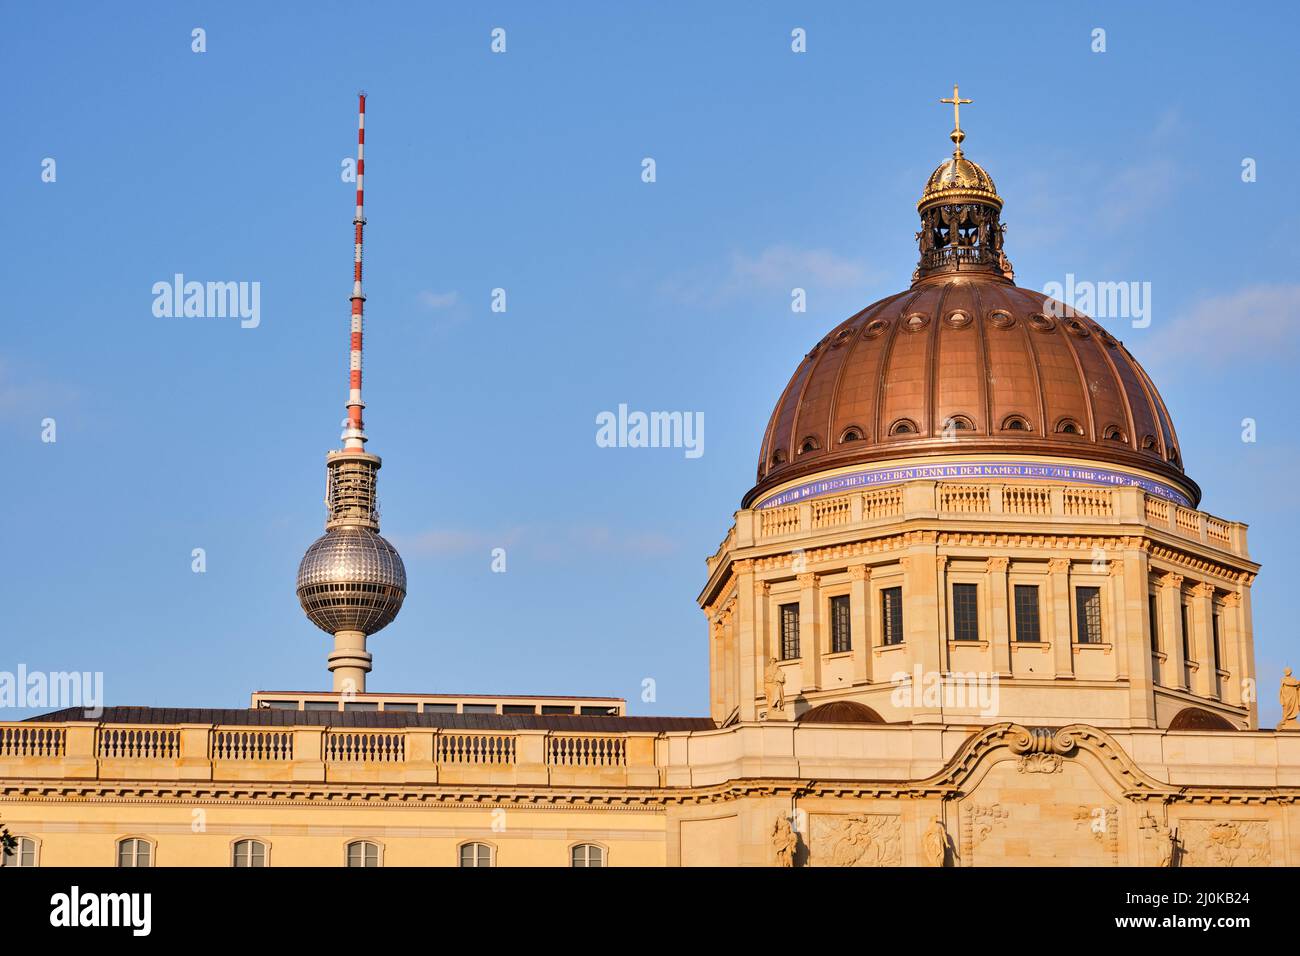 La cúpula del reconstruido Palacio de la Ciudad de Berlín y la famosa Torre de TV justo antes de la puesta de sol Foto de stock